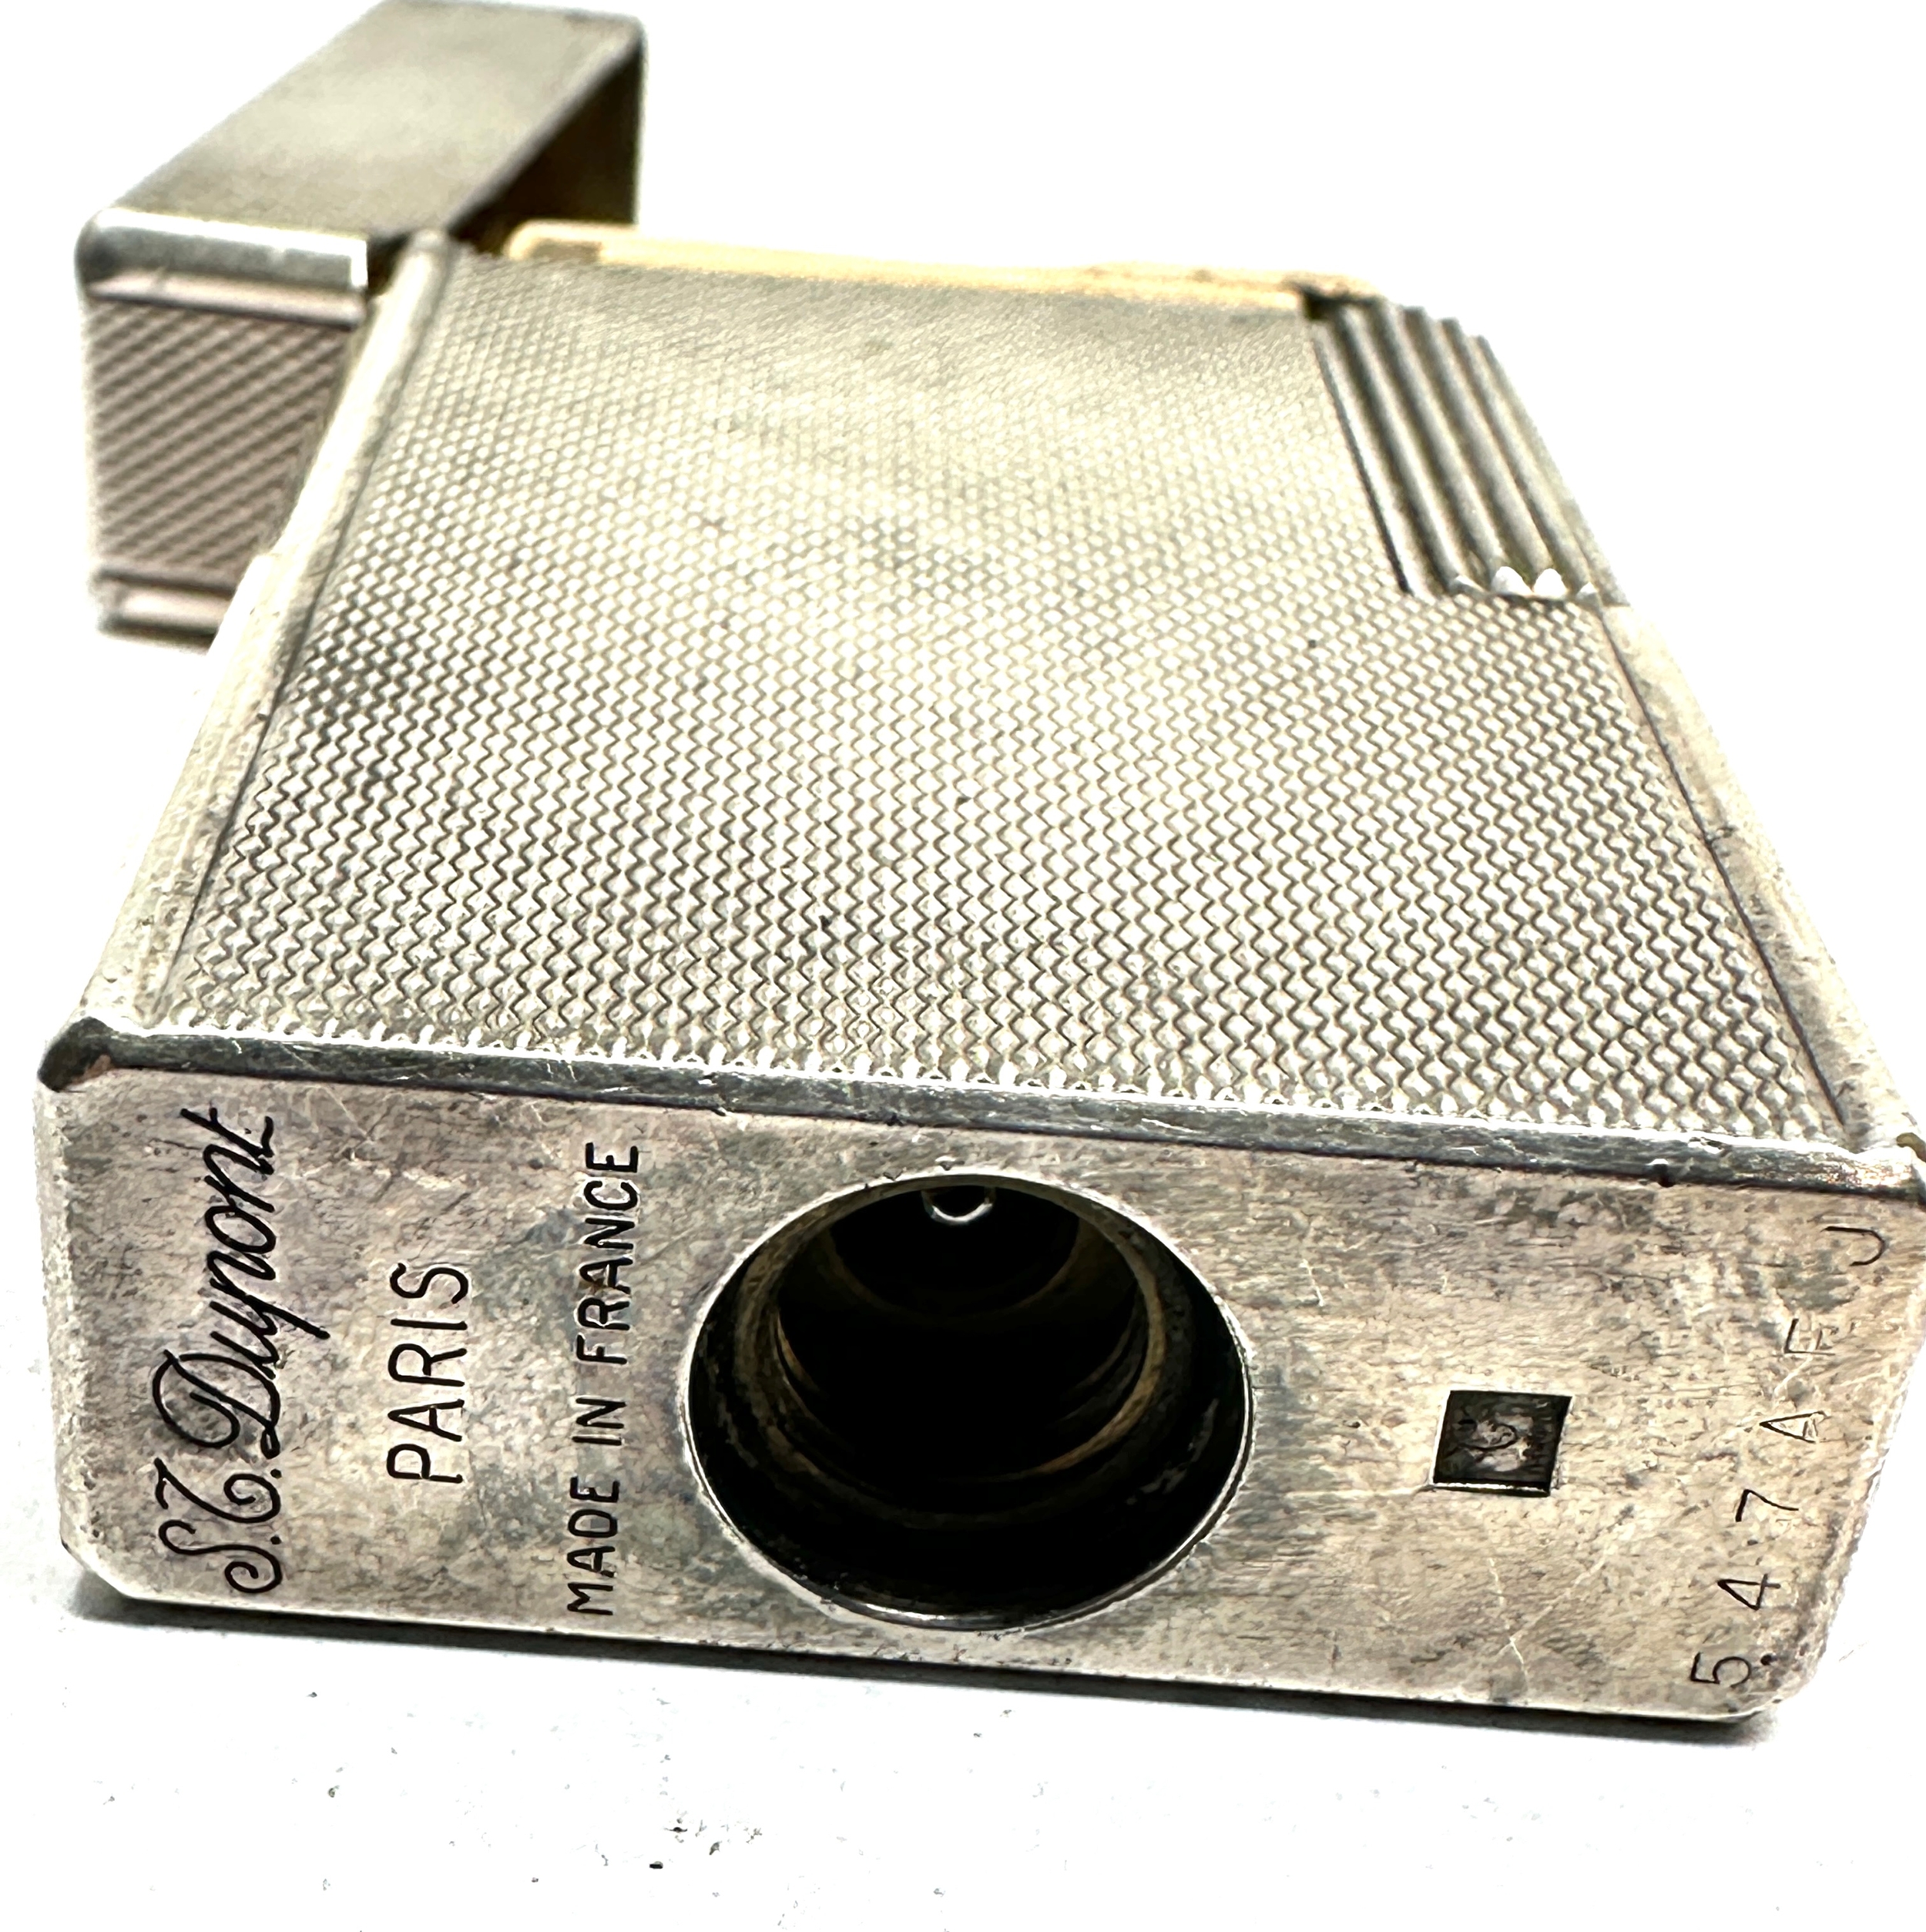 Vintage dupont silver plated cigarette lighter missing filler cap - Image 2 of 4